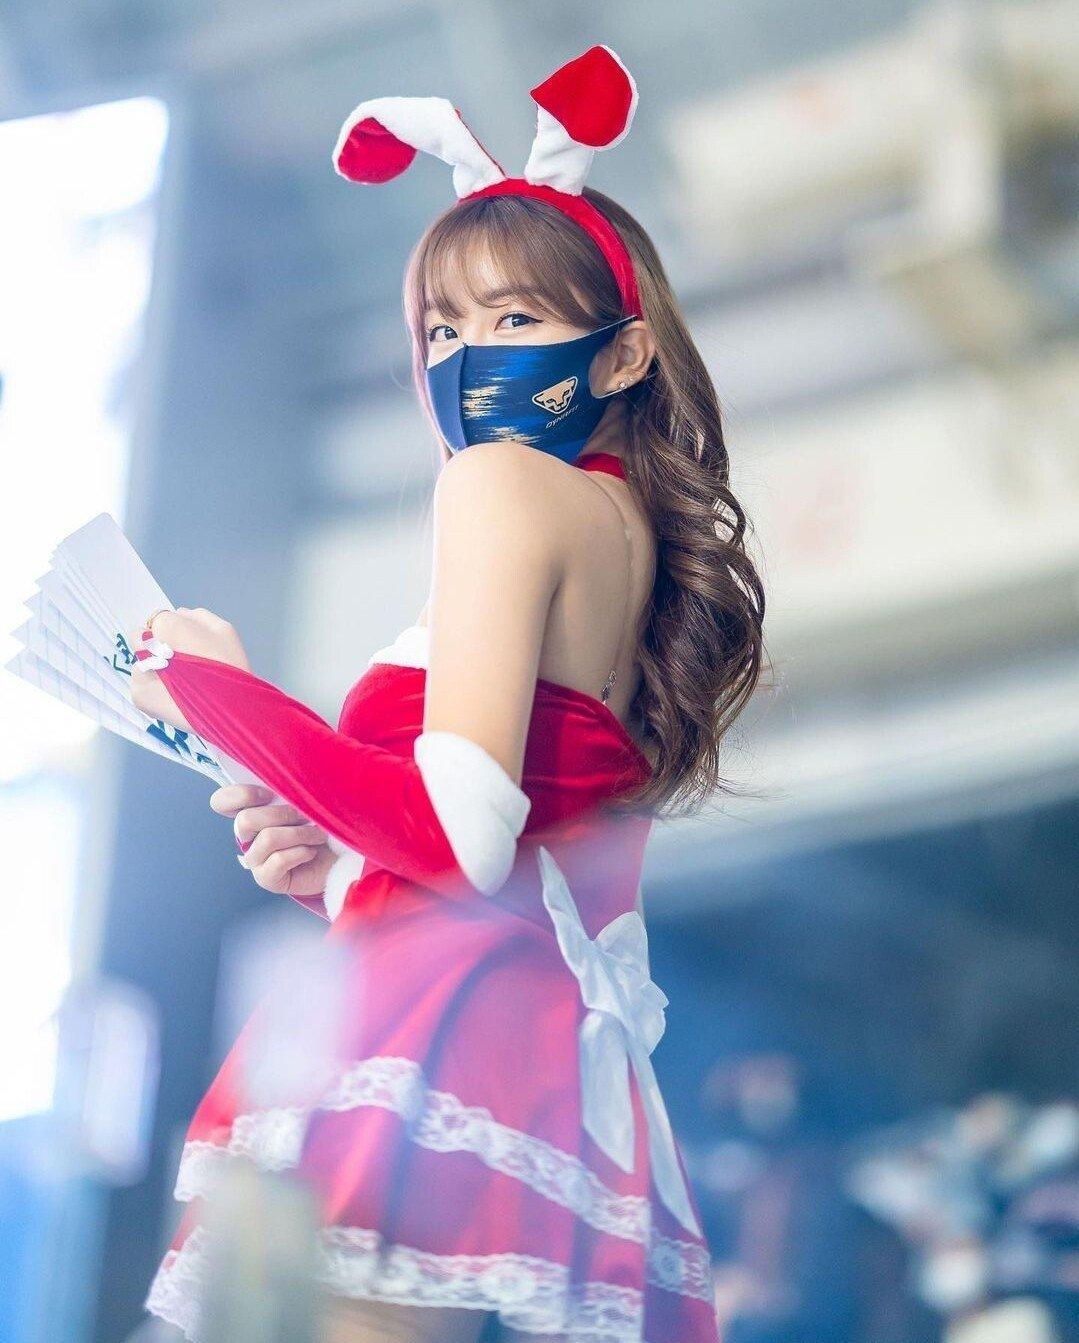 The 2022 Ahn Jihyun cheerleader Santa outfit